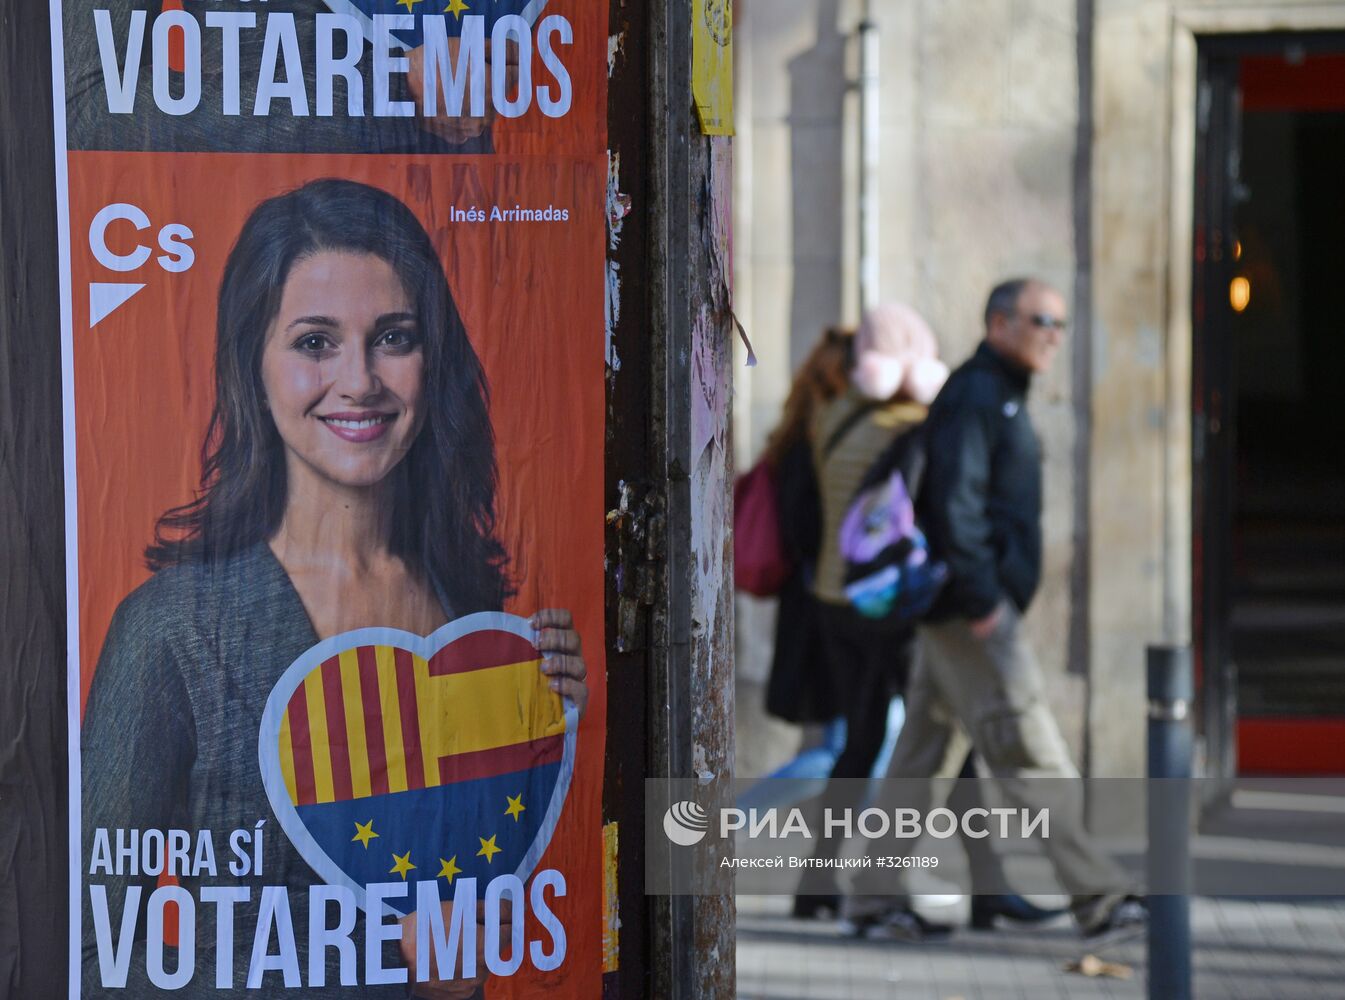 Предвыборная агитация в Каталонии